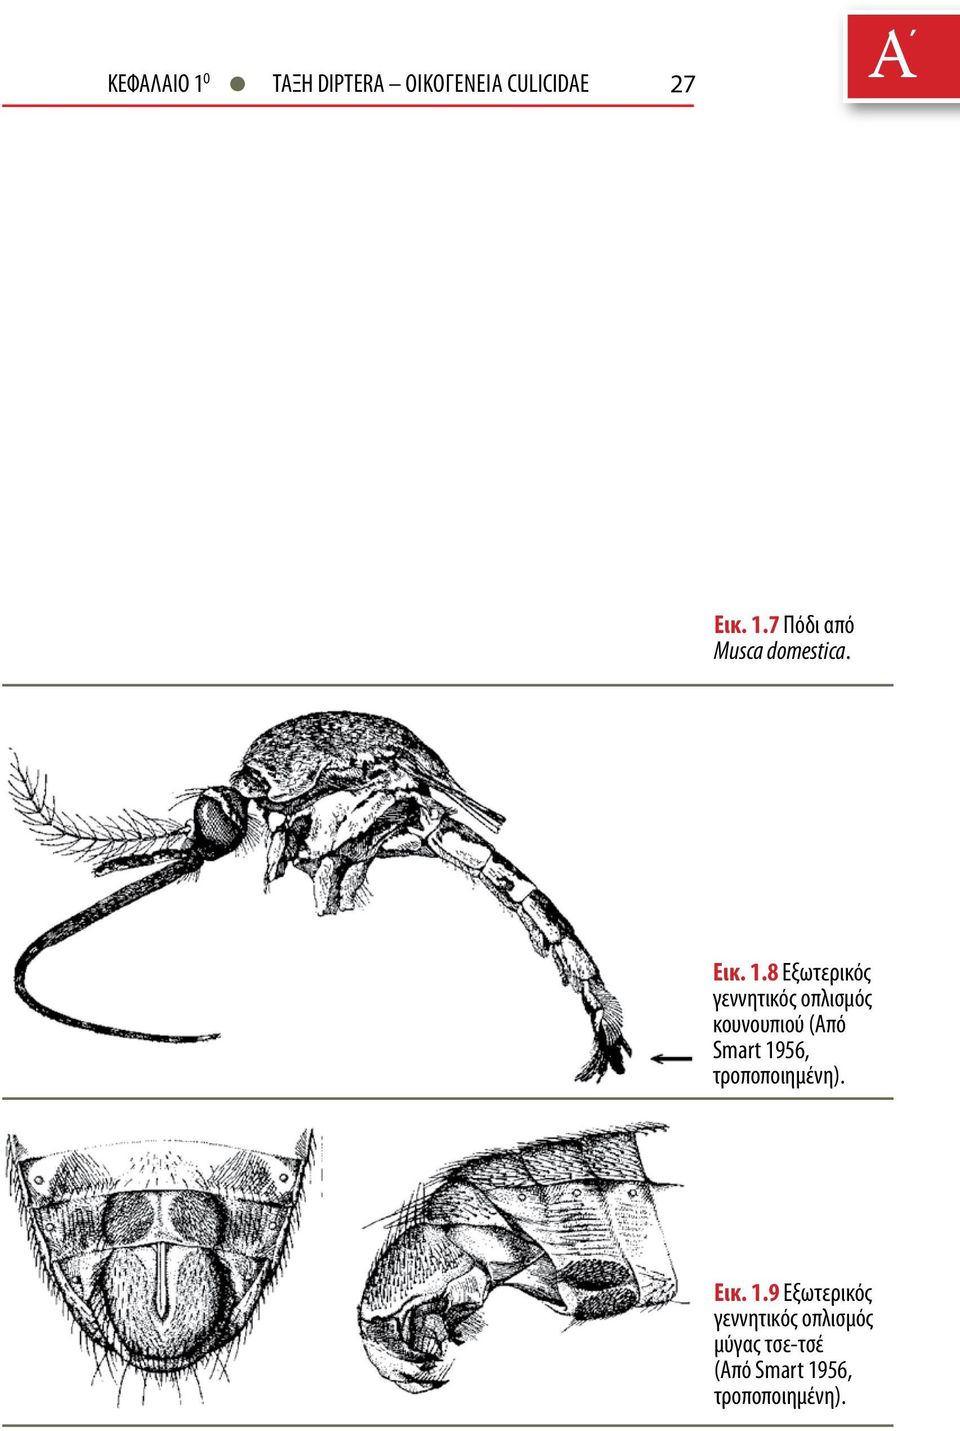 8 Εξωτερικός γεννητικός οπλισμός κουνουπιού (Από Smart 1956,